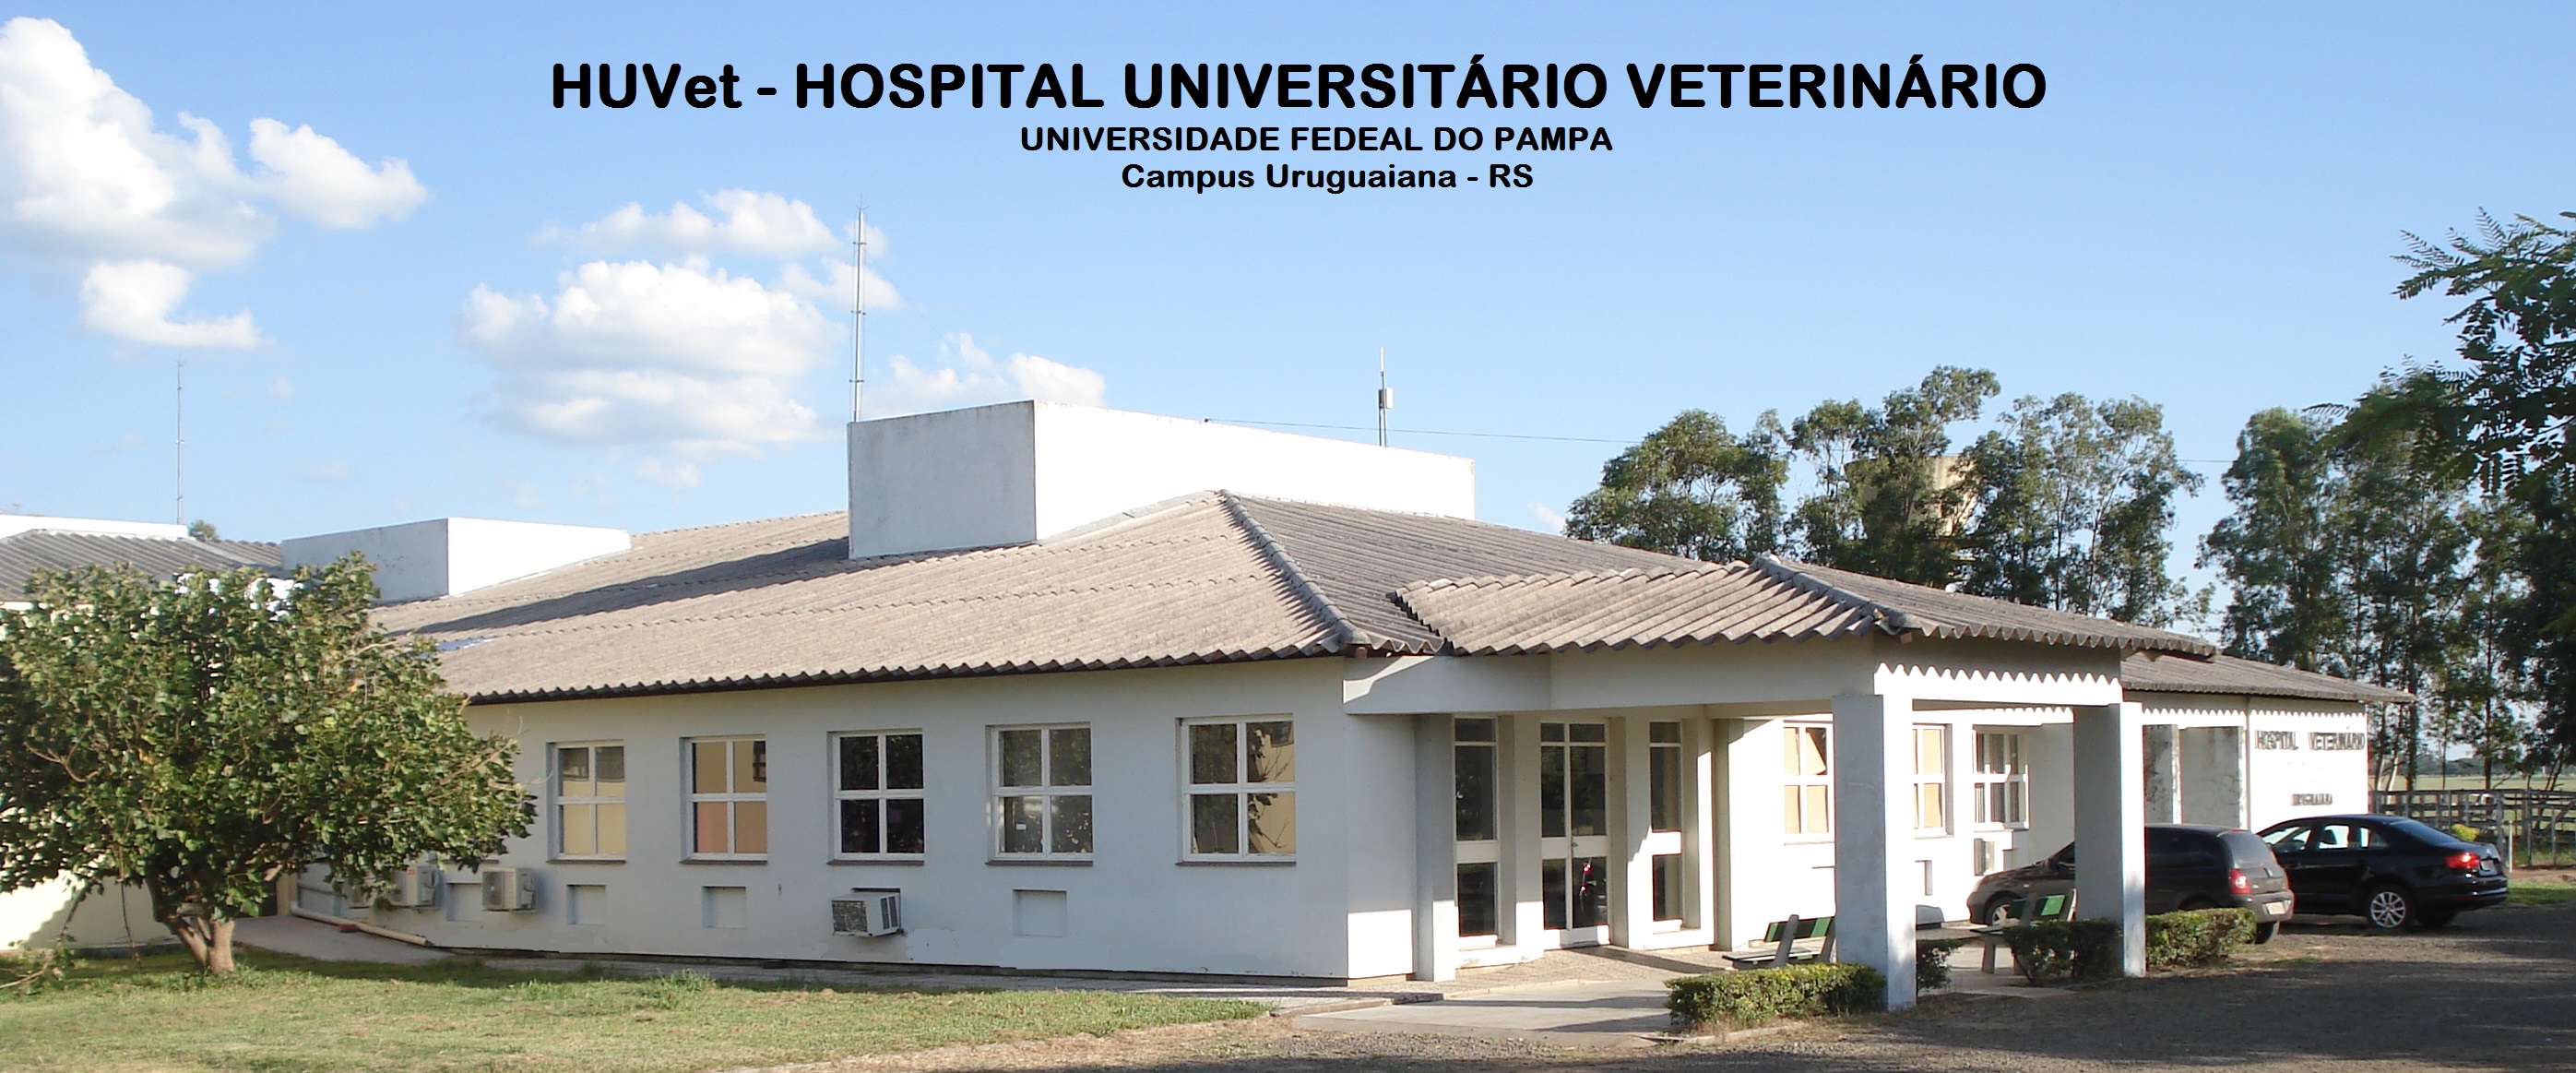 Bem-vindos | Hospital Universitário Veterinário